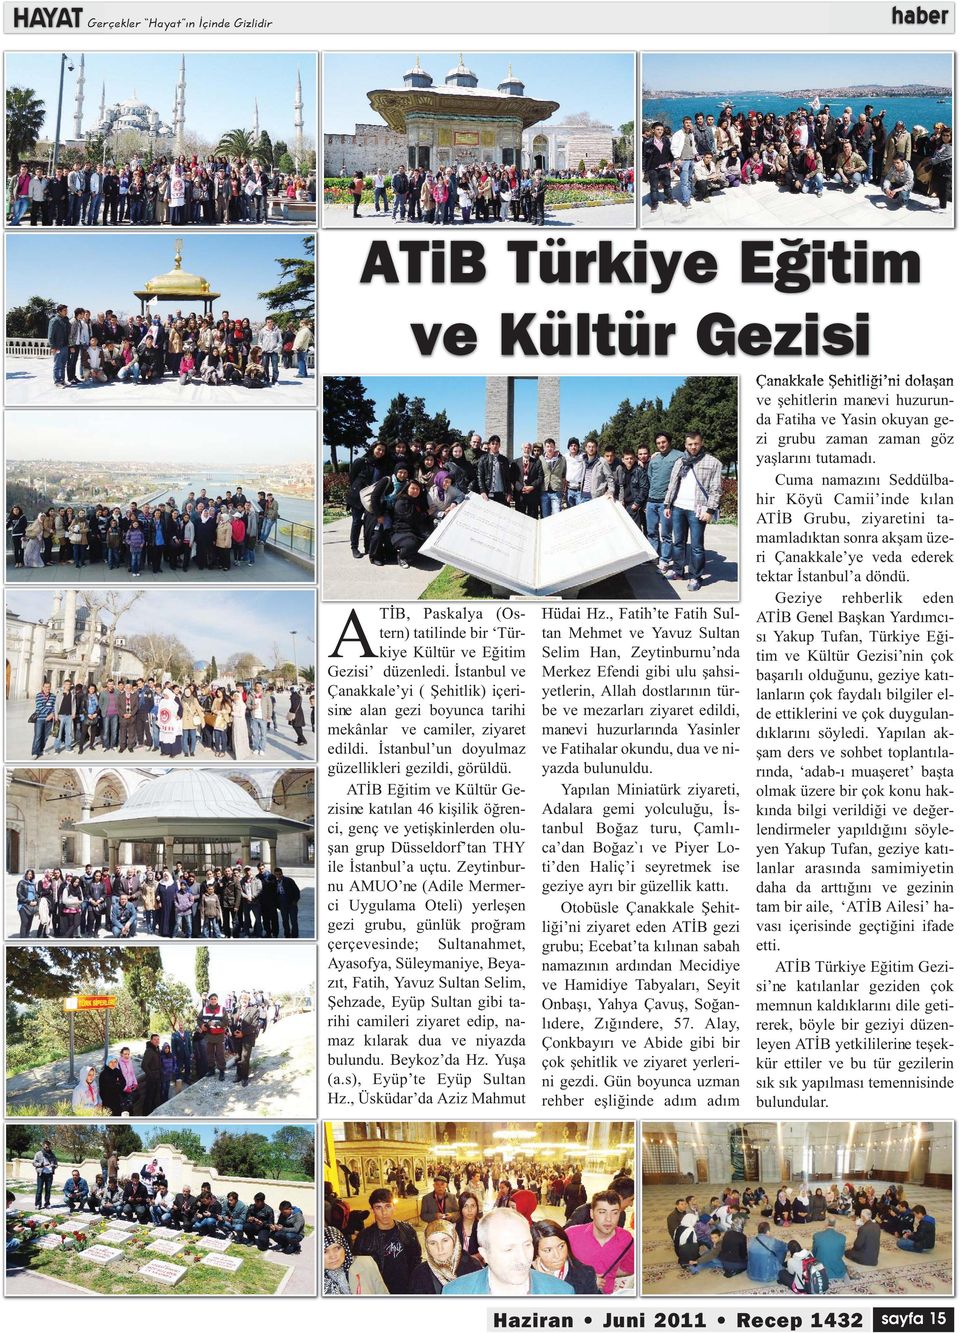 ATİB Eğitim ve Kültür Gezisine katılan 46 kişilik öğrenci, genç ve yetişkinlerden oluşan grup Düsseldorf tan THY ile İstanbul a uçtu.